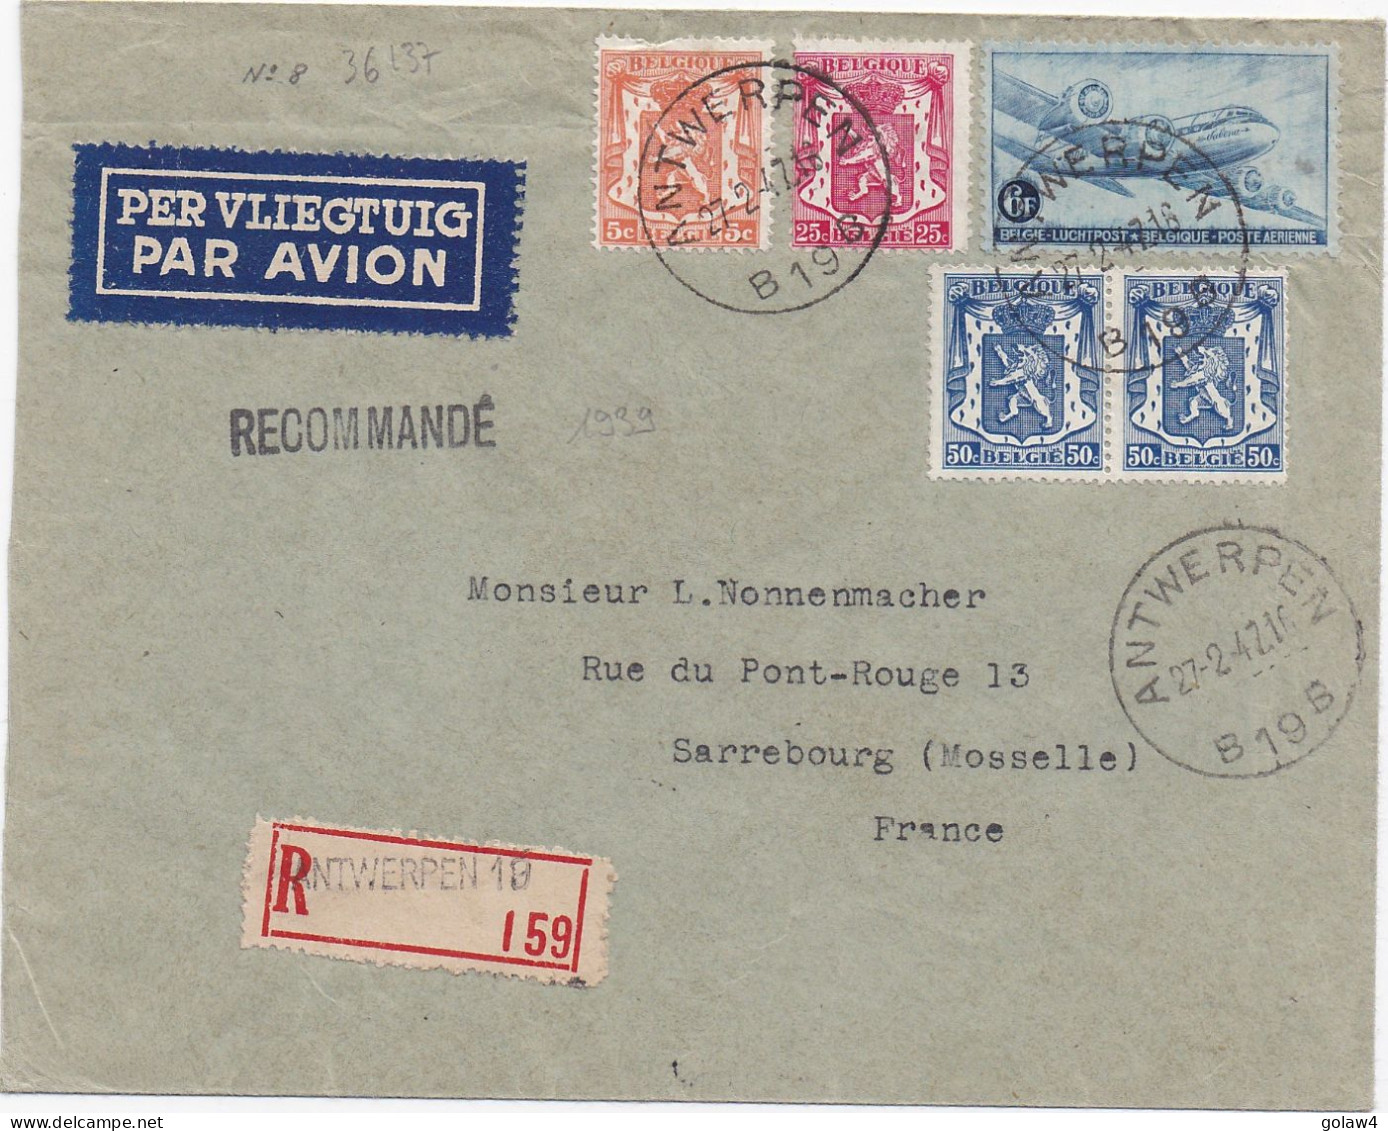 36137# POSTE AERIENNE LETTRE RECOMMANDEE PAR AVION Obl ANTWERPEN 1947 SARREBOURG MOSELLE - Covers & Documents